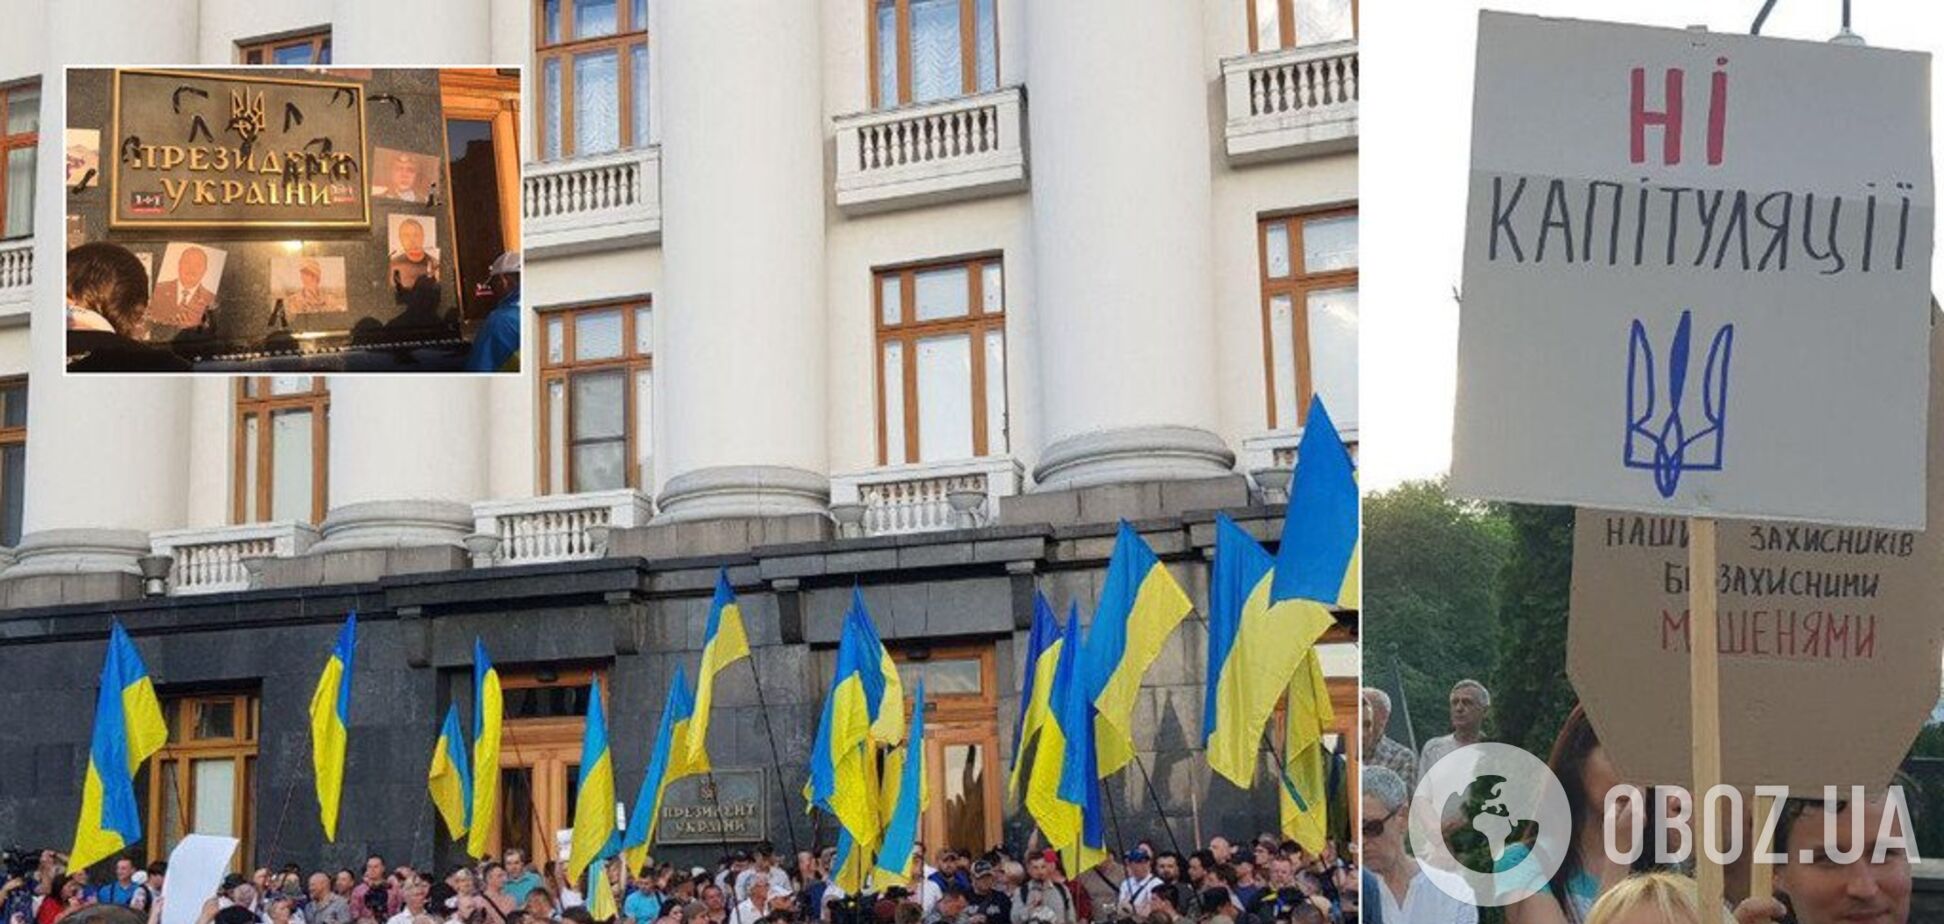 'Капитуляция — предательство!' Украинцы устроили массовую акцию под АП